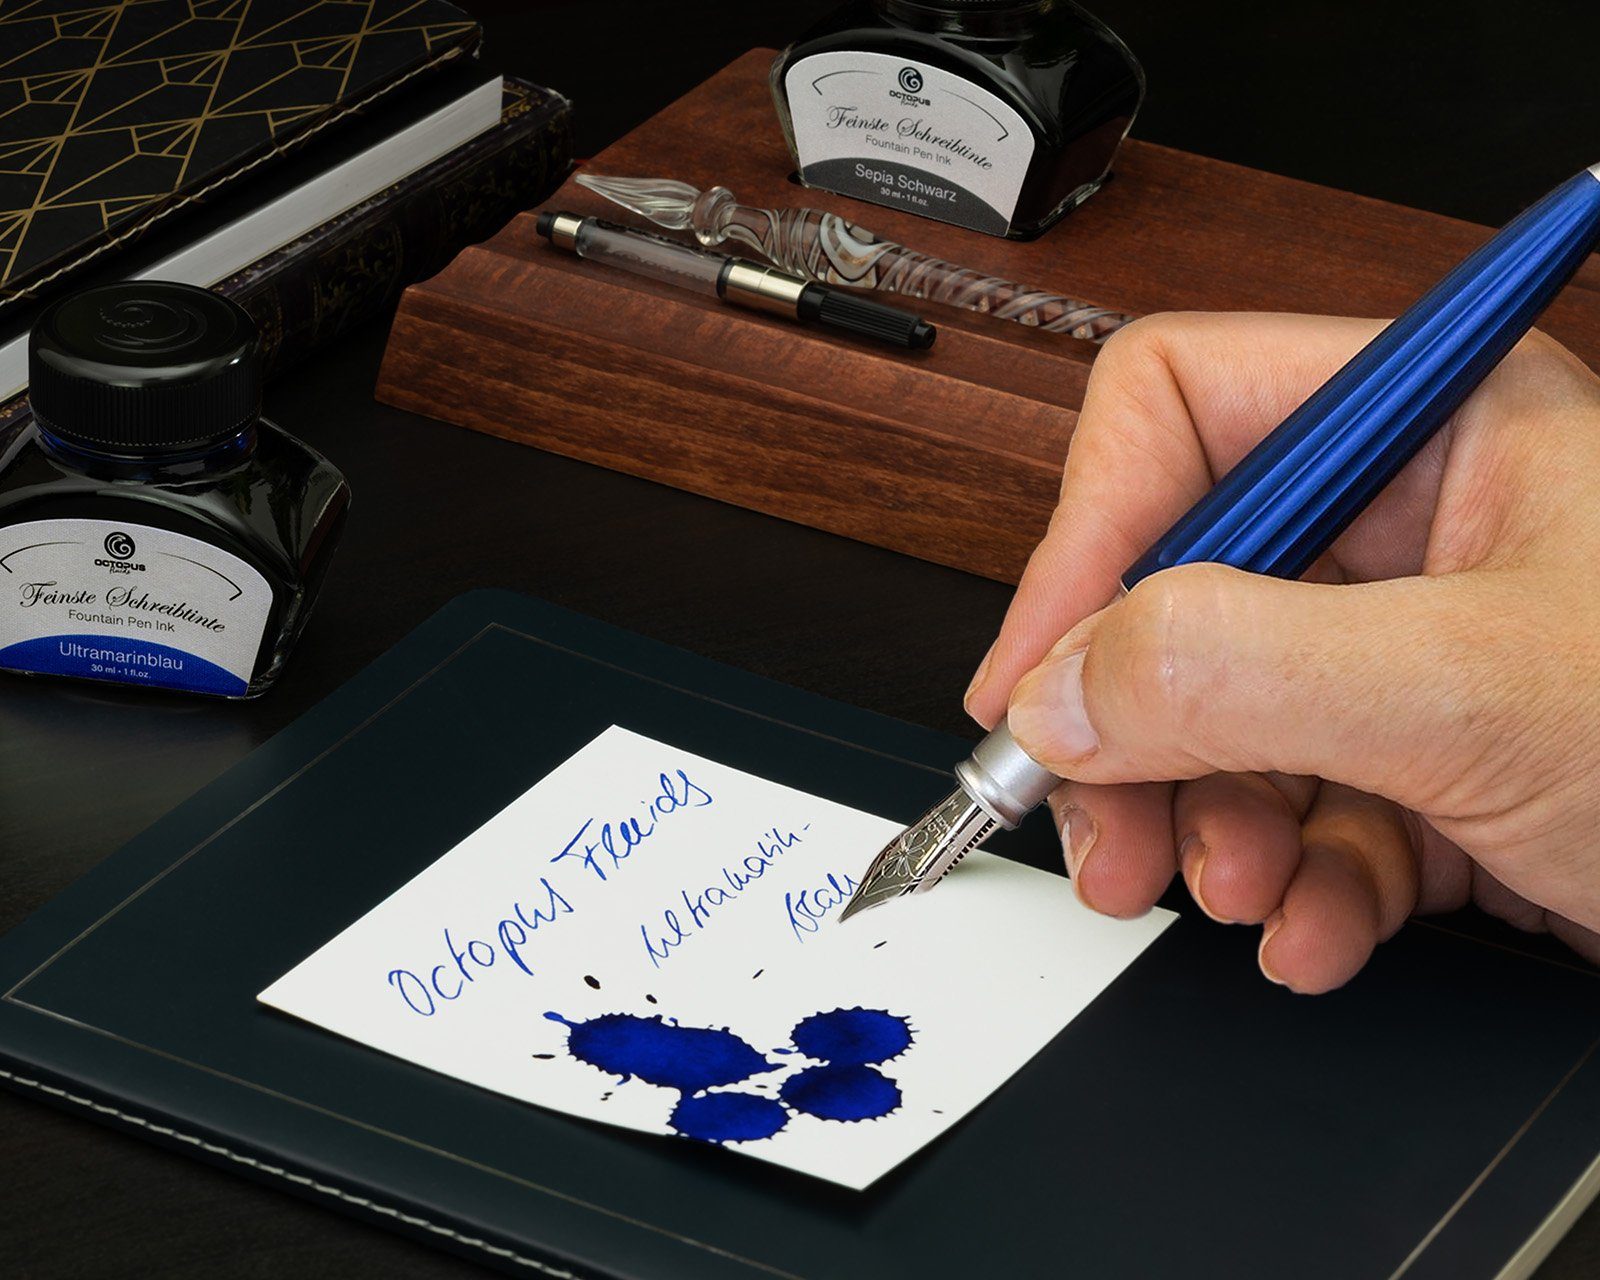 Schreibtinte MADE GERMANY aus von und und Octopus (Komplett-Set Tinte, Wenge-Holz Holzetui), DIPLOMAT Füllhalter mit Tintenkonverter, Wenge IN Ultramarinblau blau Aero Fluids Stiftetui mit